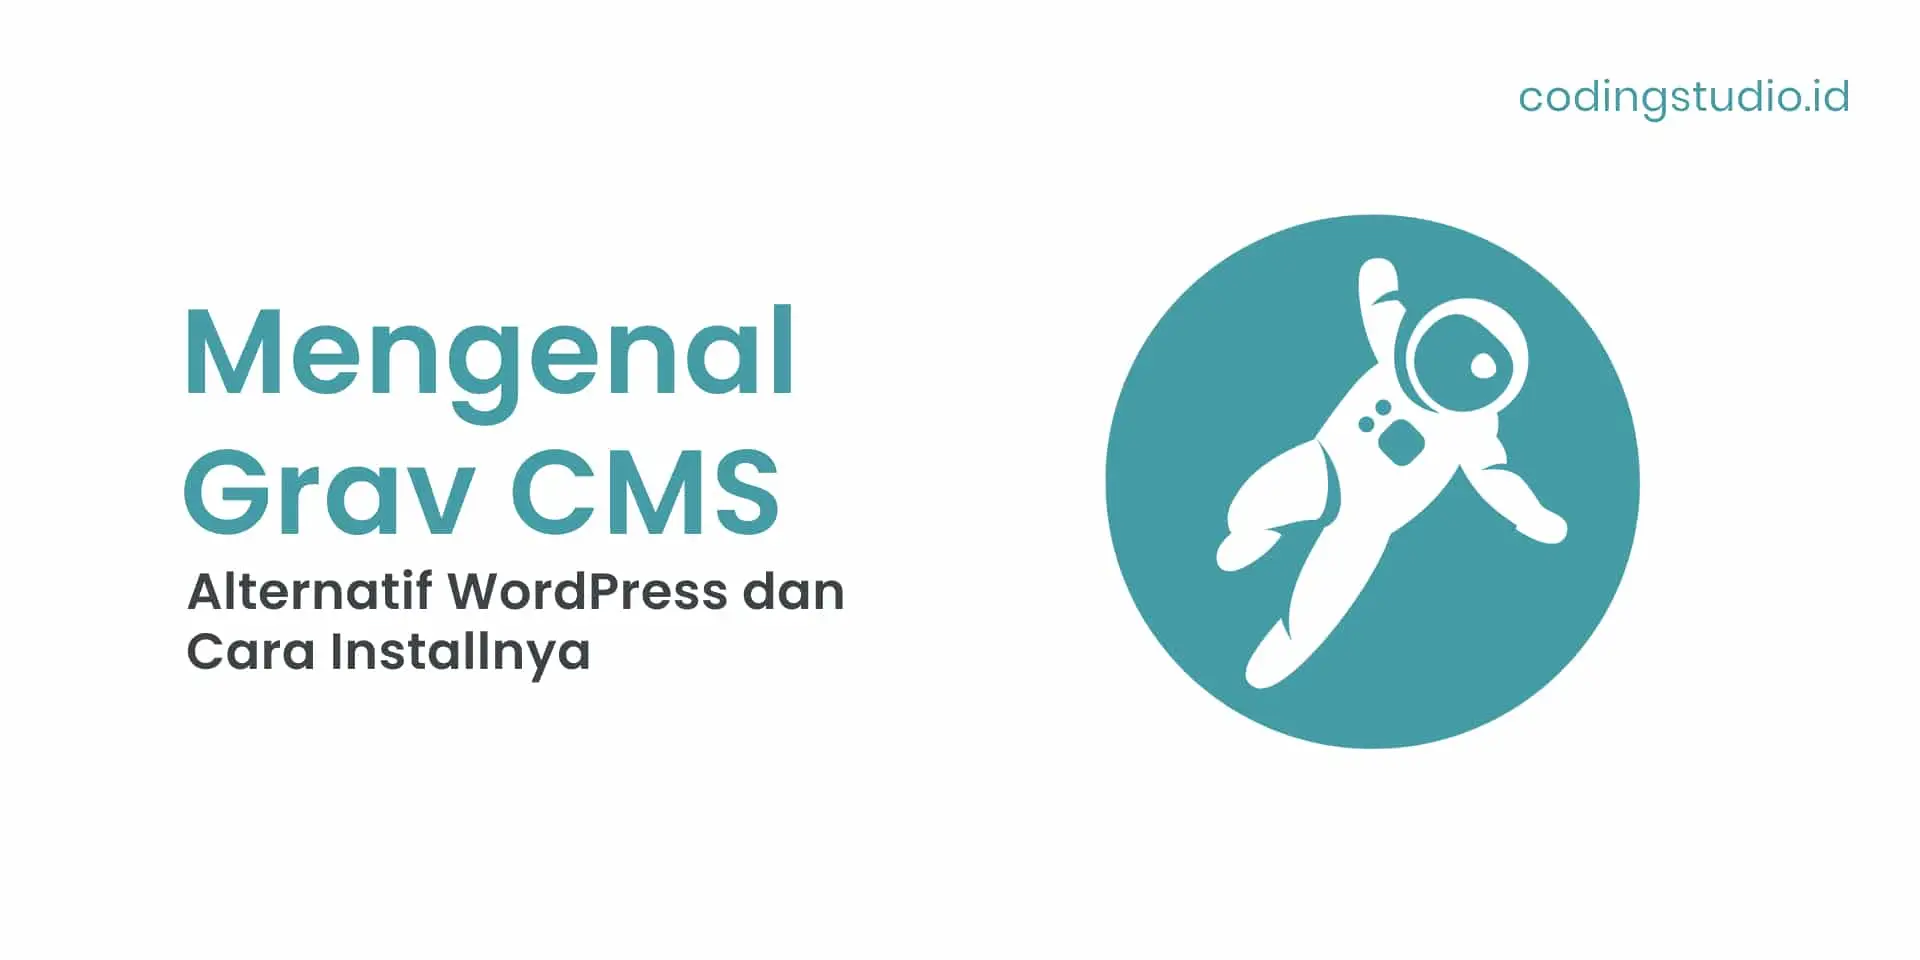 Mengenal Grav CMS, Alternatif WordPress dan Cara Installnya